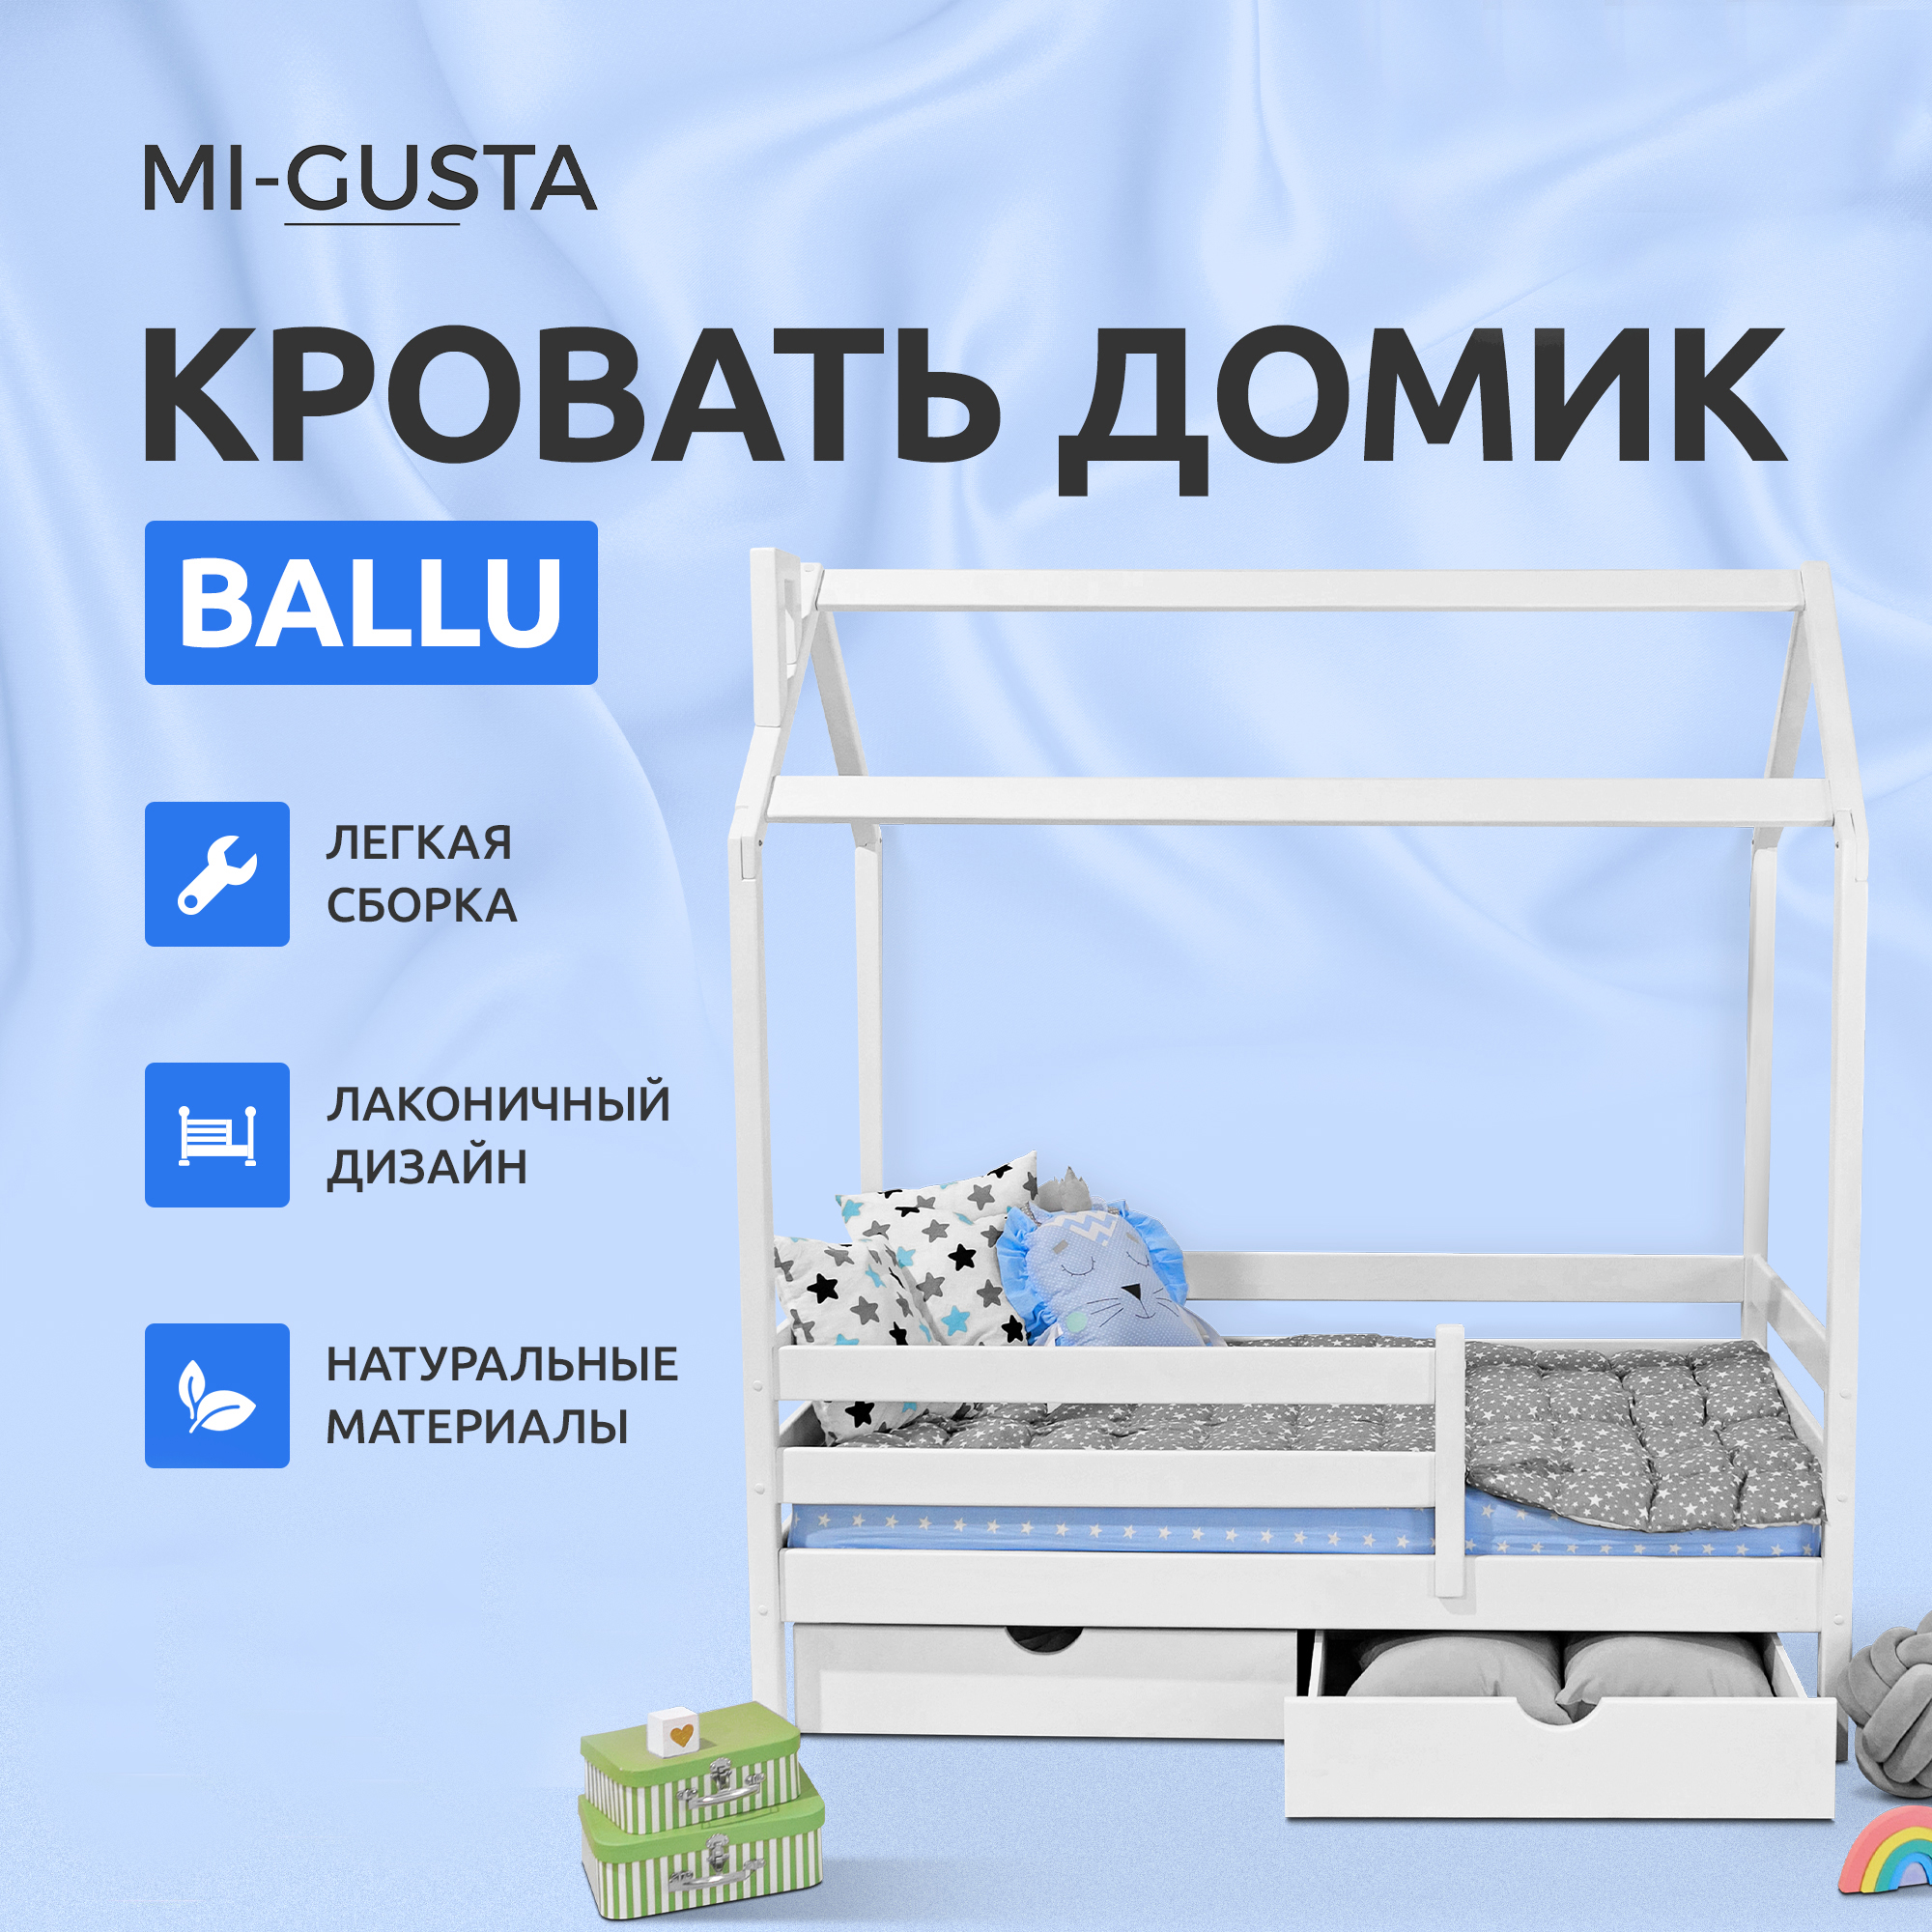 Кровать детская Mi-Gusta Ballu, 189х89х175, береза, кровать-домик, без ящиков детская кровать домик mi gusta ballu из массива дерева без ящиков